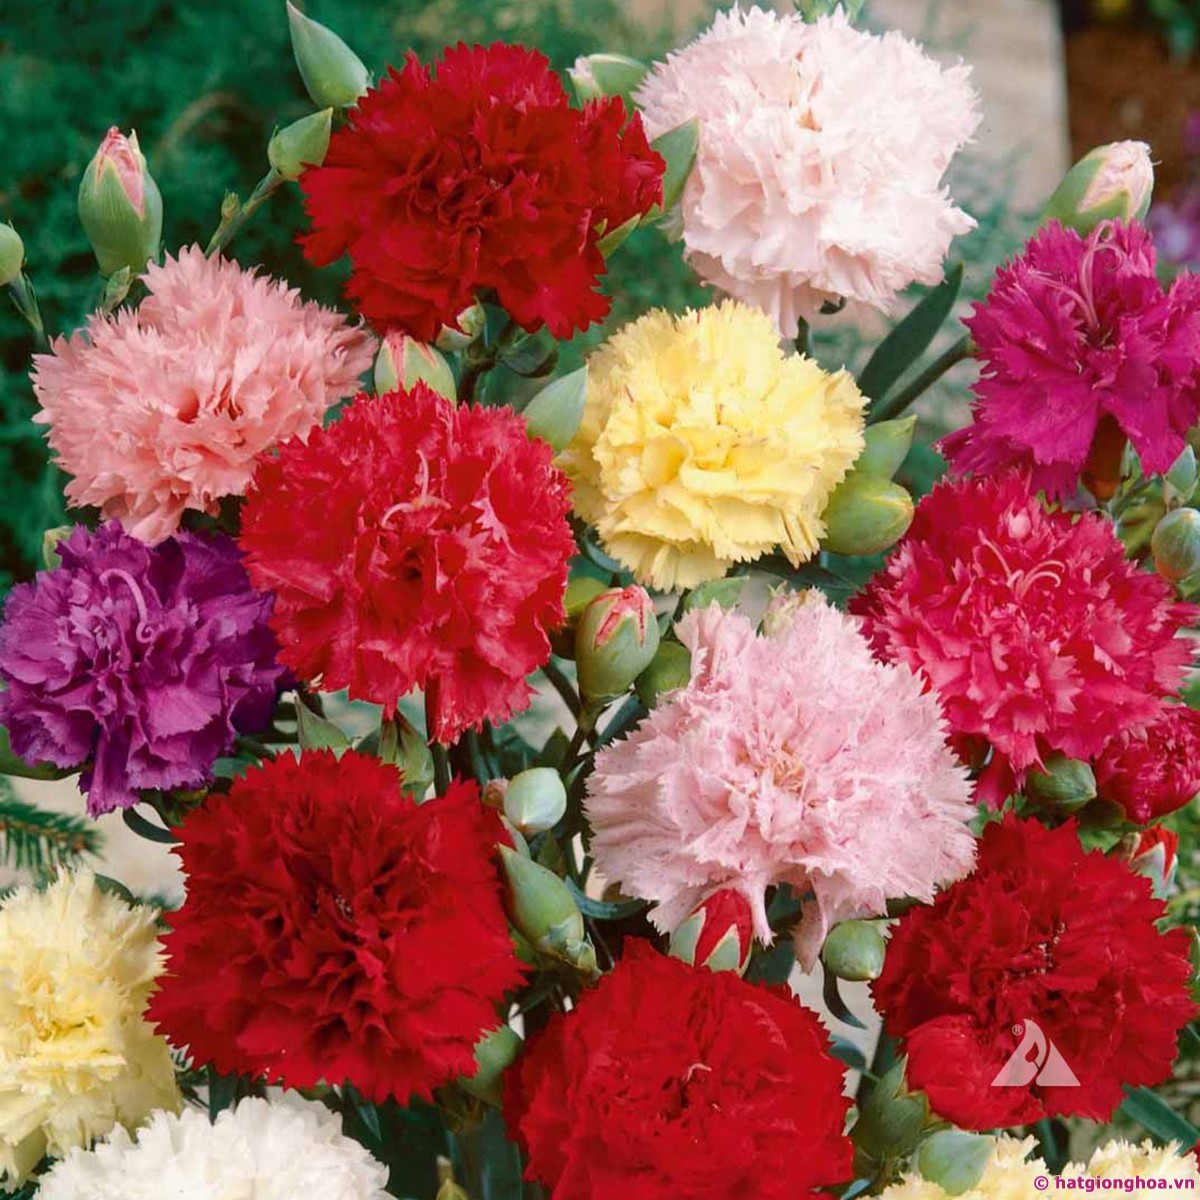 Bó hoa cẩm chướng - Bó hoa cẩm chướng là món quà tuyệt vời để tặng cho người mà bạn yêu thương. Được tạo thành từ những bông hoa đầy màu sắc, bó hoa cẩm chướng mang đến sự tươi tắn và lãng mạn. Hãy khám phá hình ảnh này để cảm nhận được sự thanh tao và đẹp đẽ của bó hoa này.